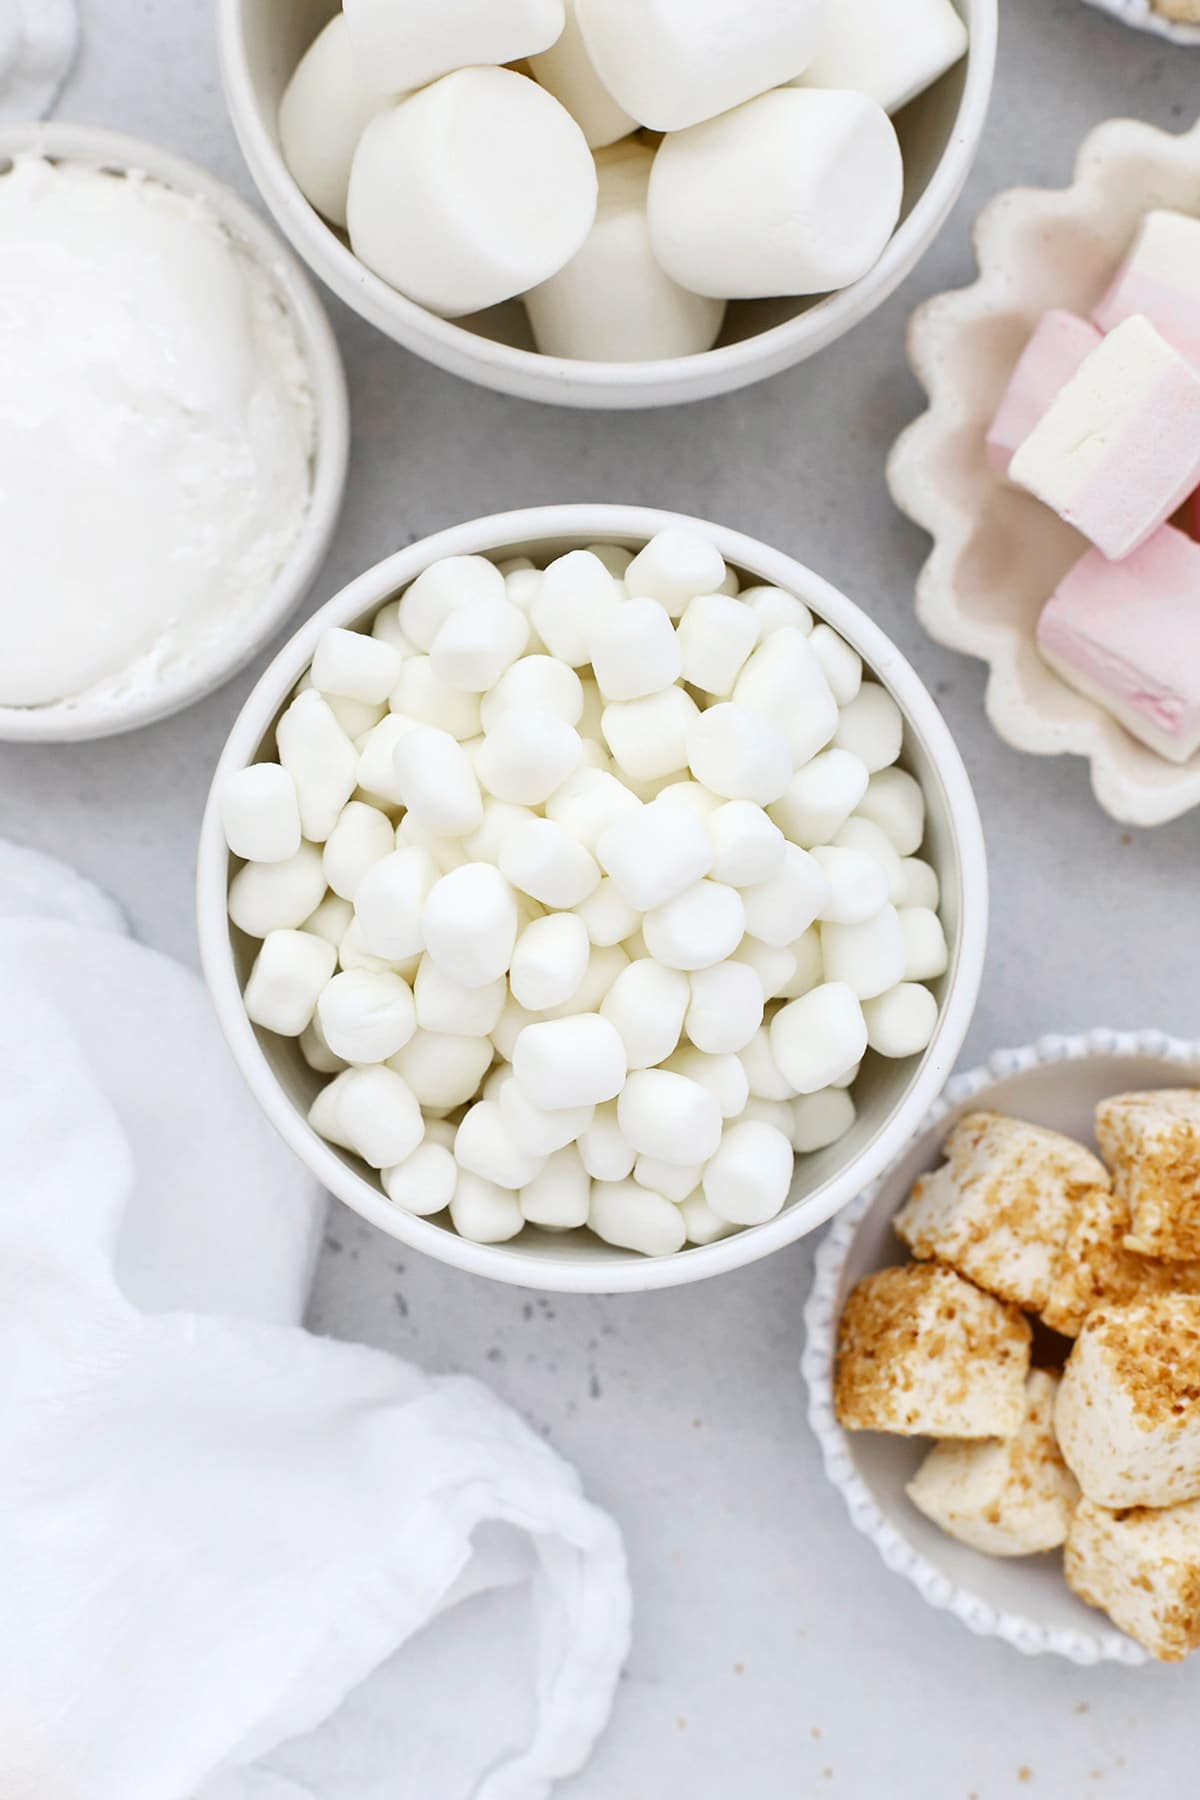 Are Marshmallows Gluten-Free?